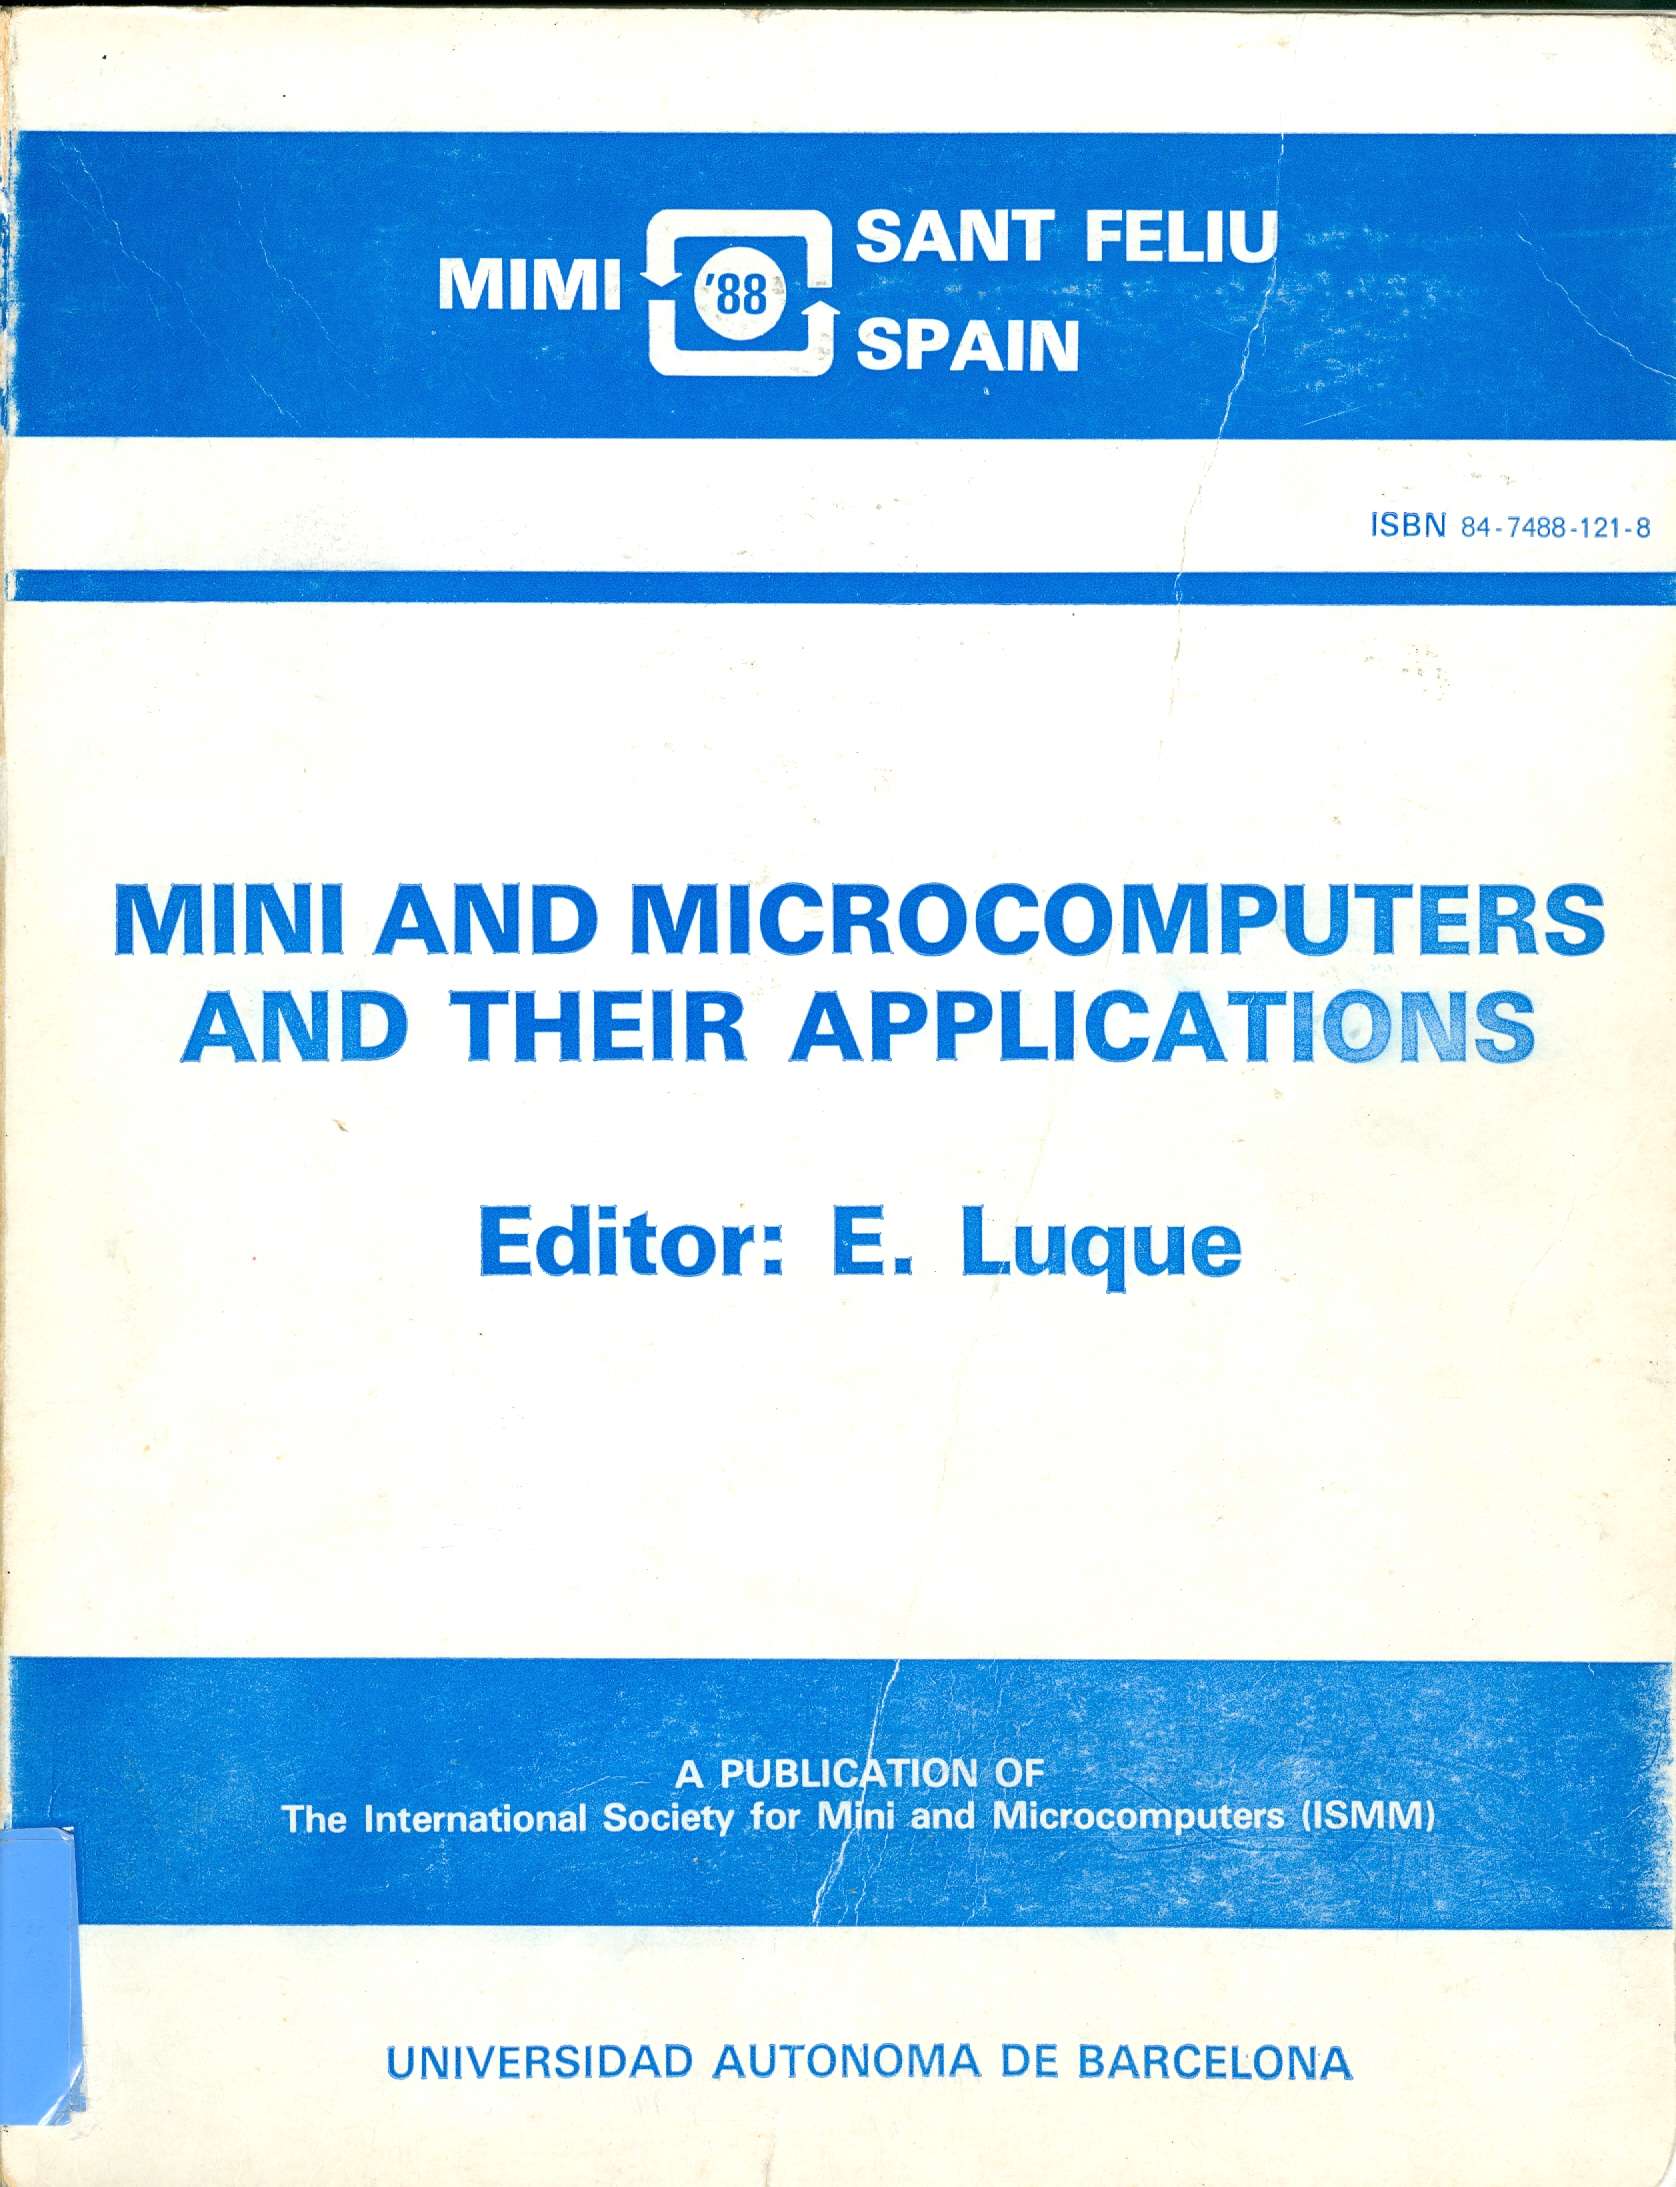 Imagen de portada del libro Mini and Microcomputers and their applications